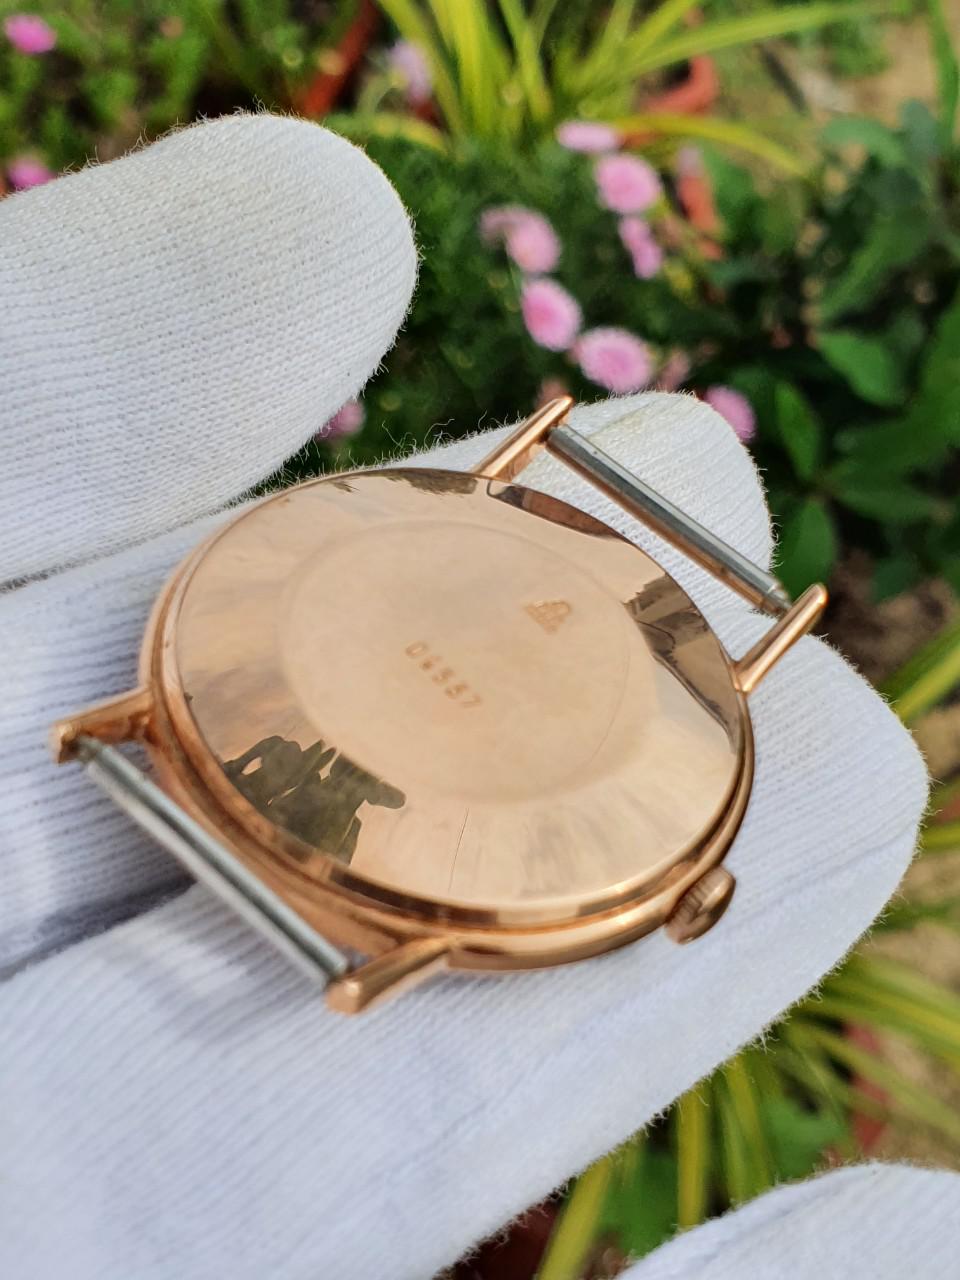 Đồng hồ cổ Poljot 29 jewels automatic vàng đúc nguyên khối 583 vĩ tuyến